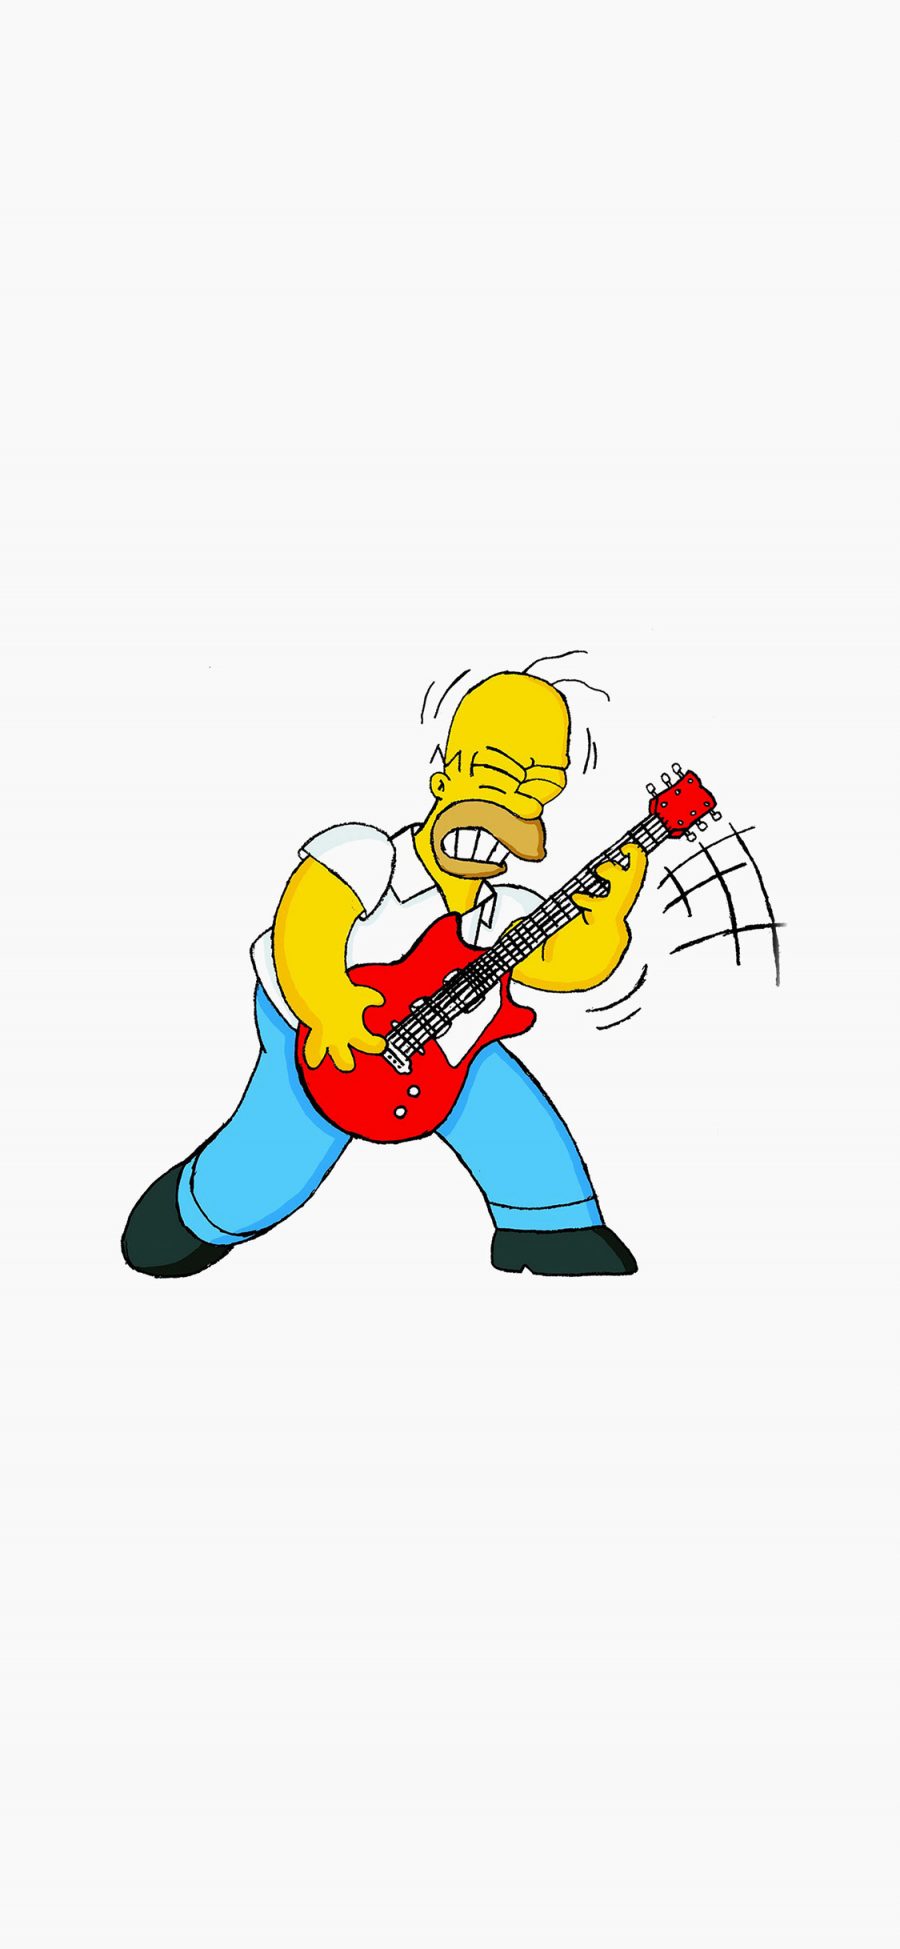 [2436×1125]辛普森 美国 动画 吉他 幽默 苹果手机动漫壁纸图片